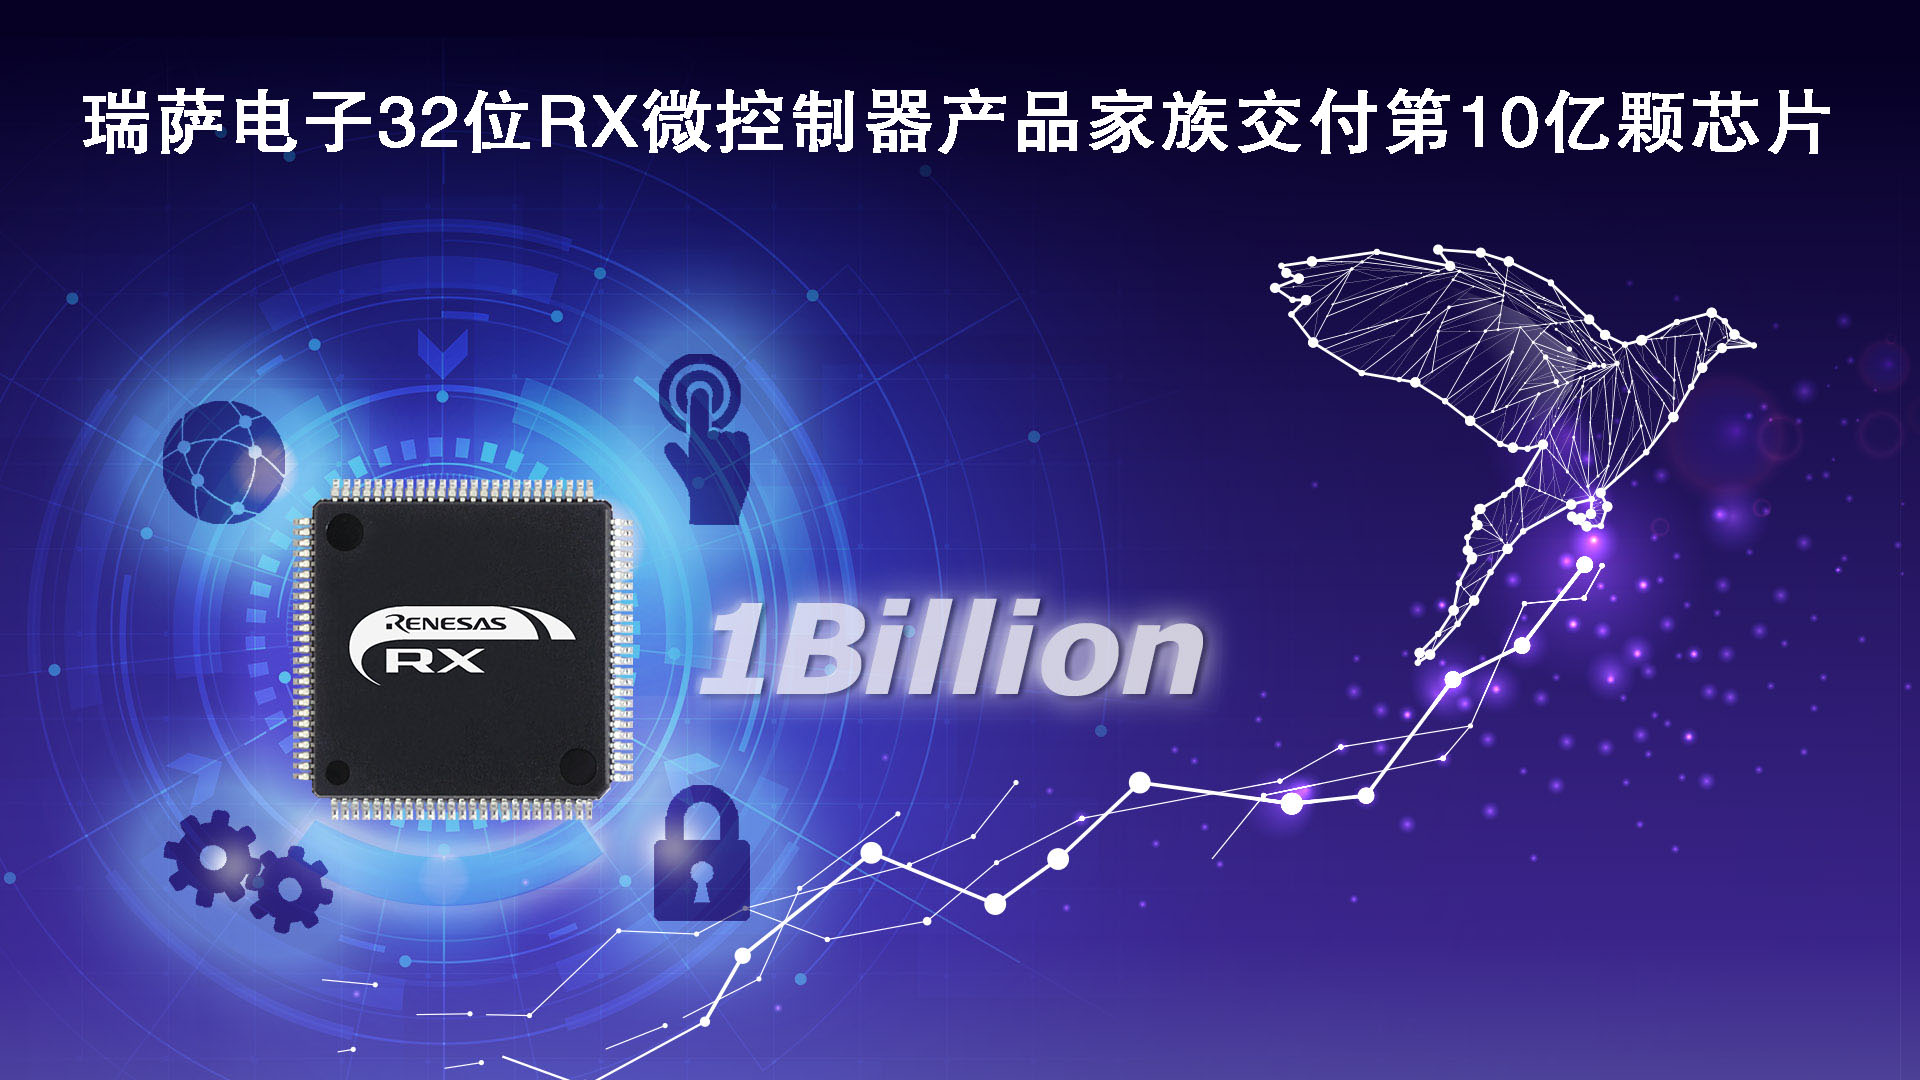 “瑞萨电子32位RX微控制器产品家族交付第10亿颗芯片"